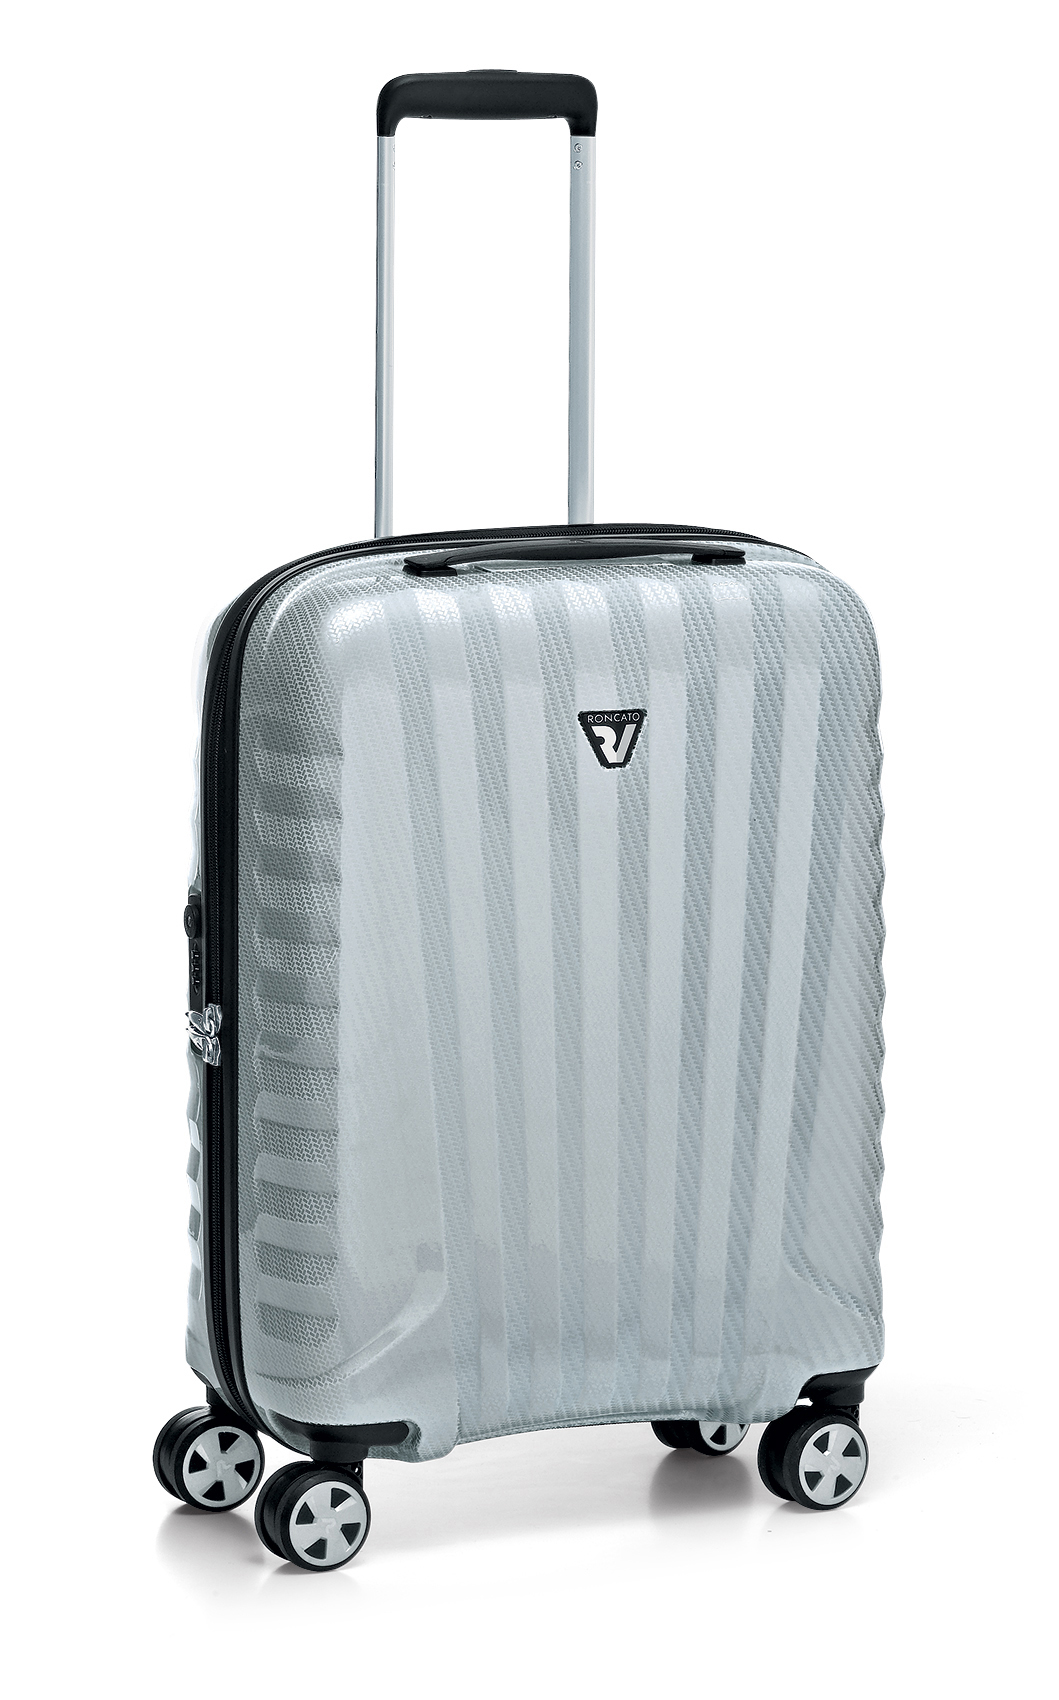 Authorised suppliers of Roncato Luxury Italian Designer Luggage And Business Bags - Attavanti